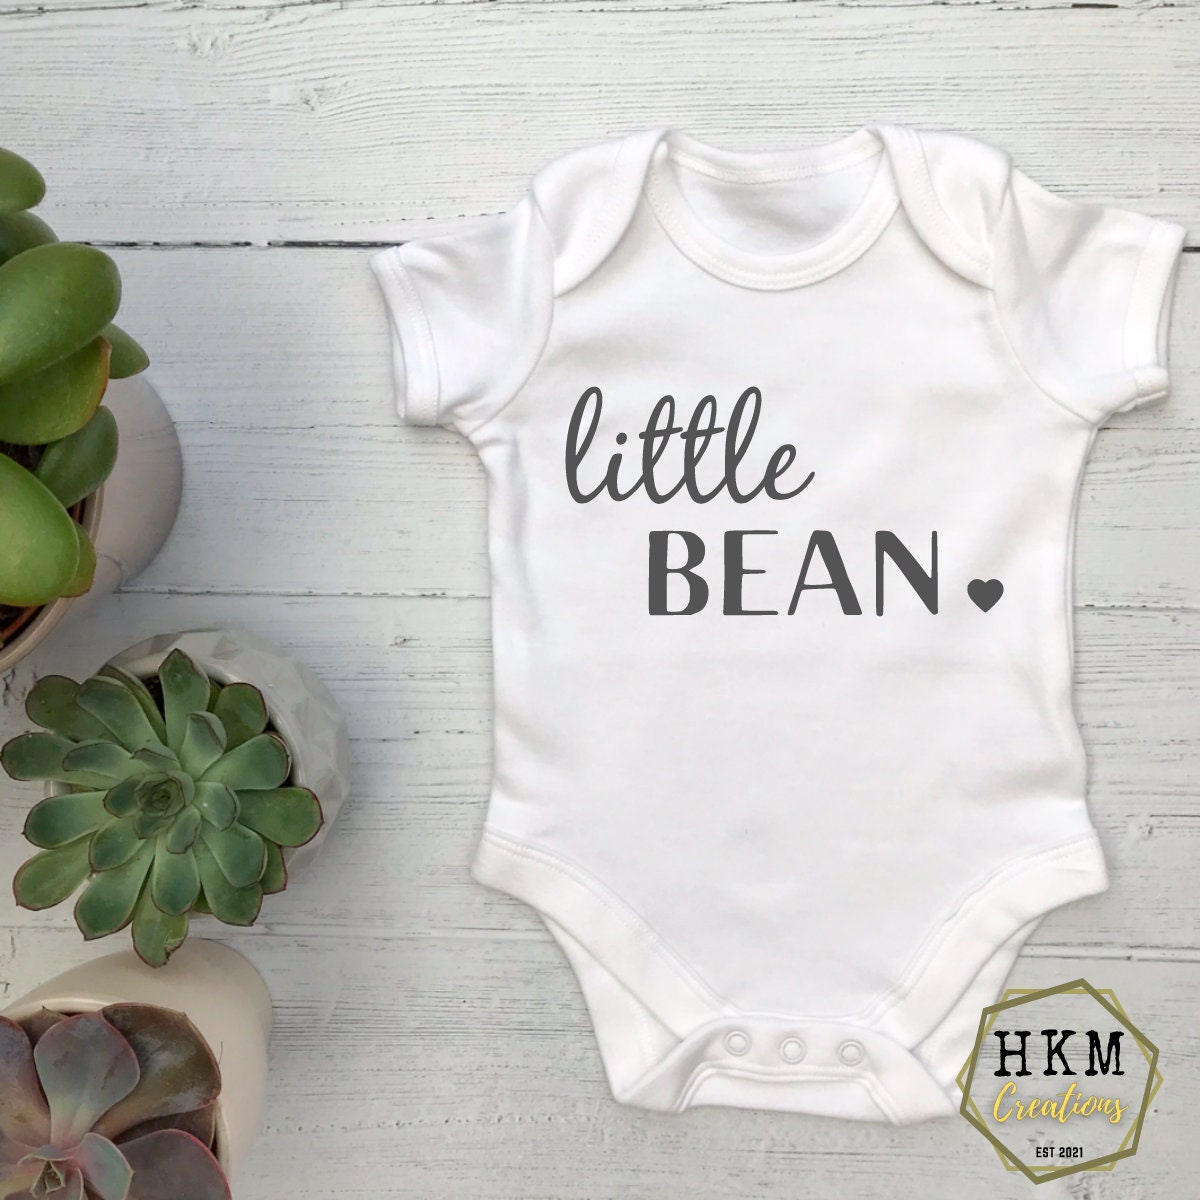 Little Bean Baby Grow / Vest BOYS GIRLS NEWBORN